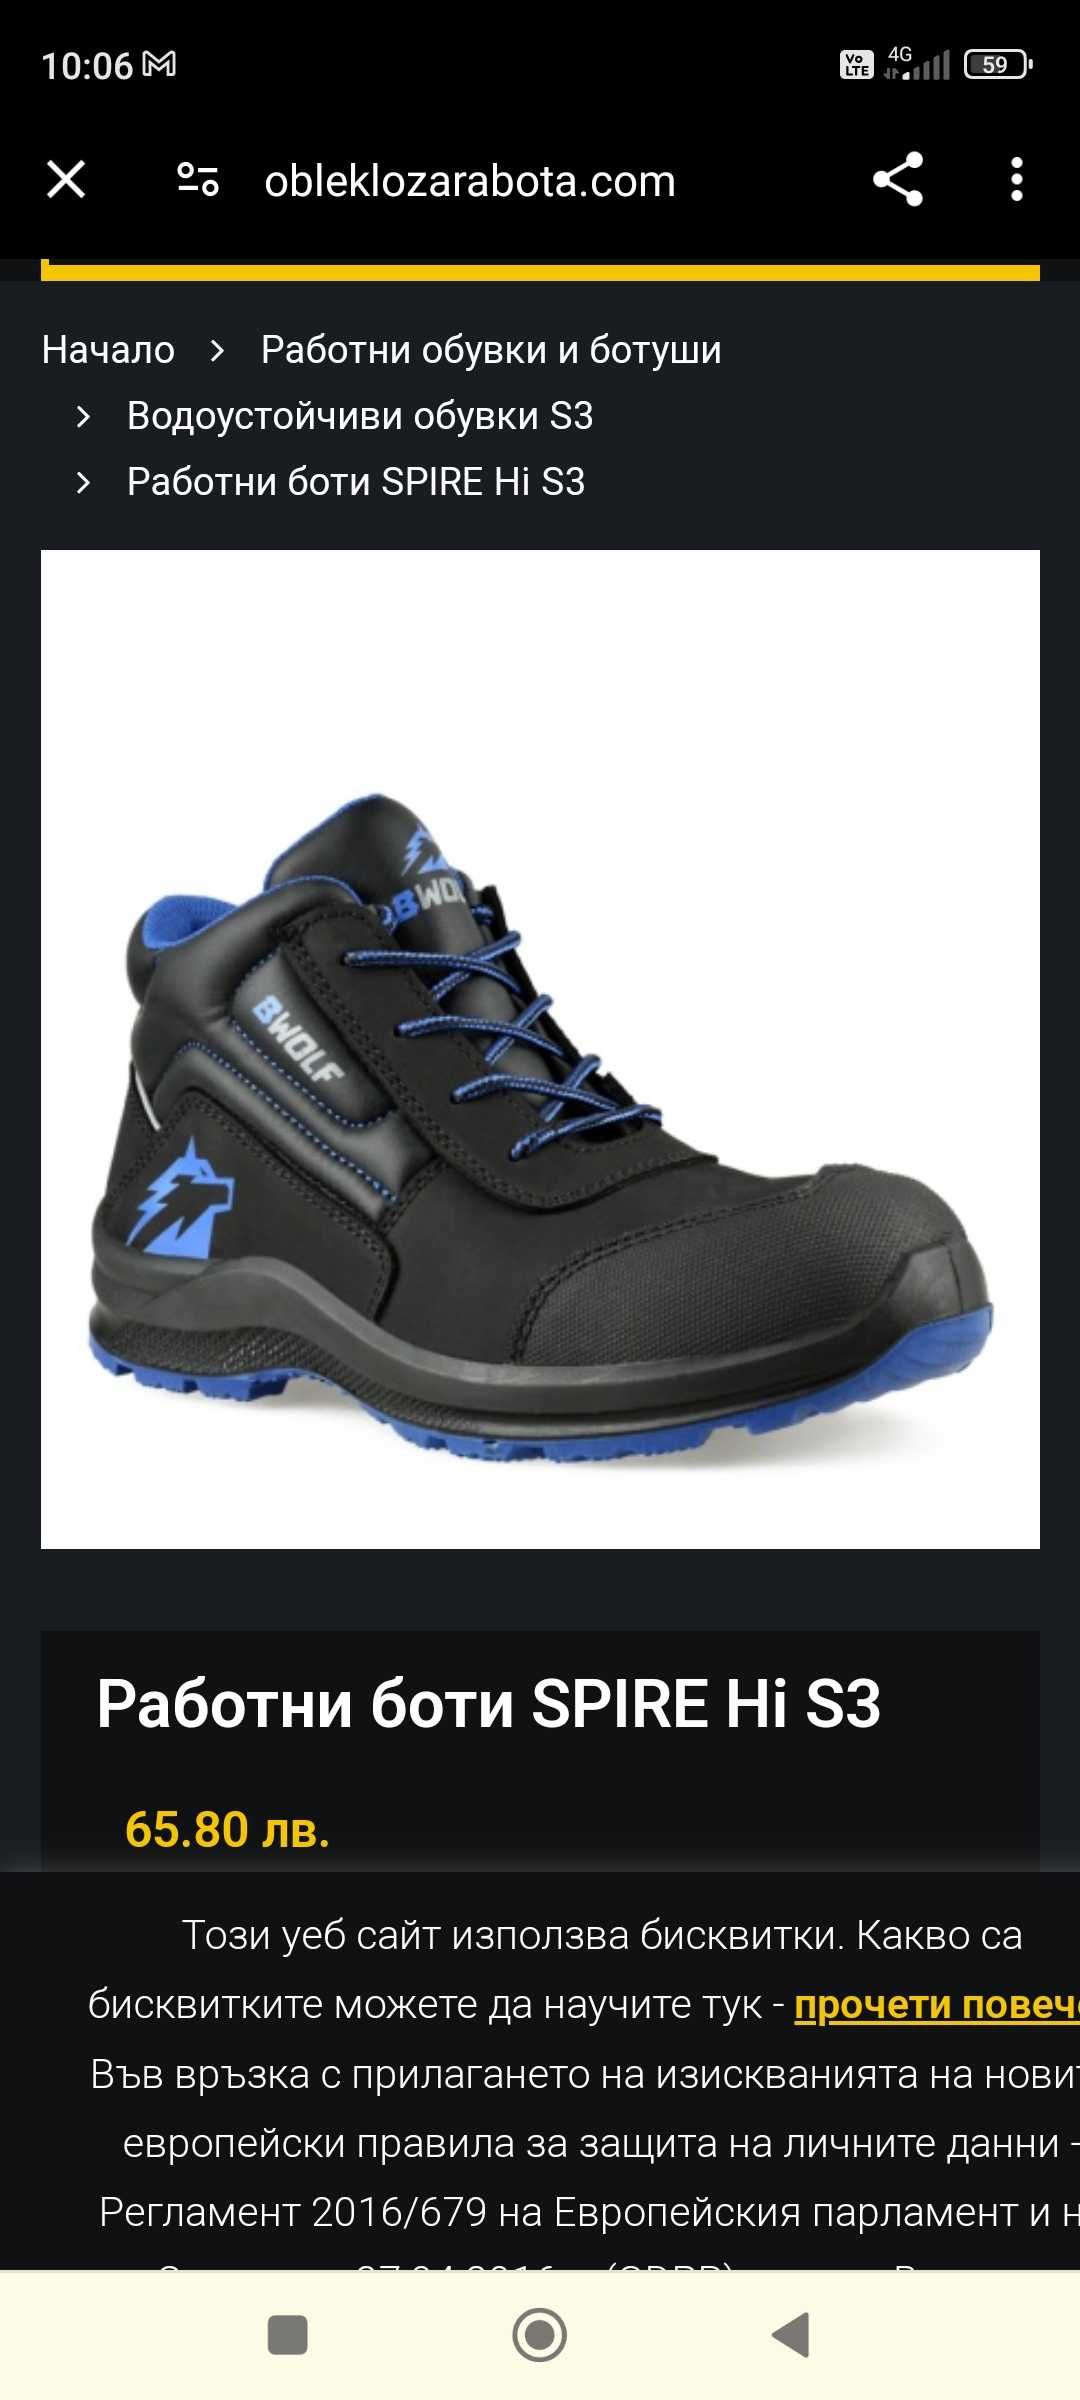 Защитни работни обувки SPIRE HI S3